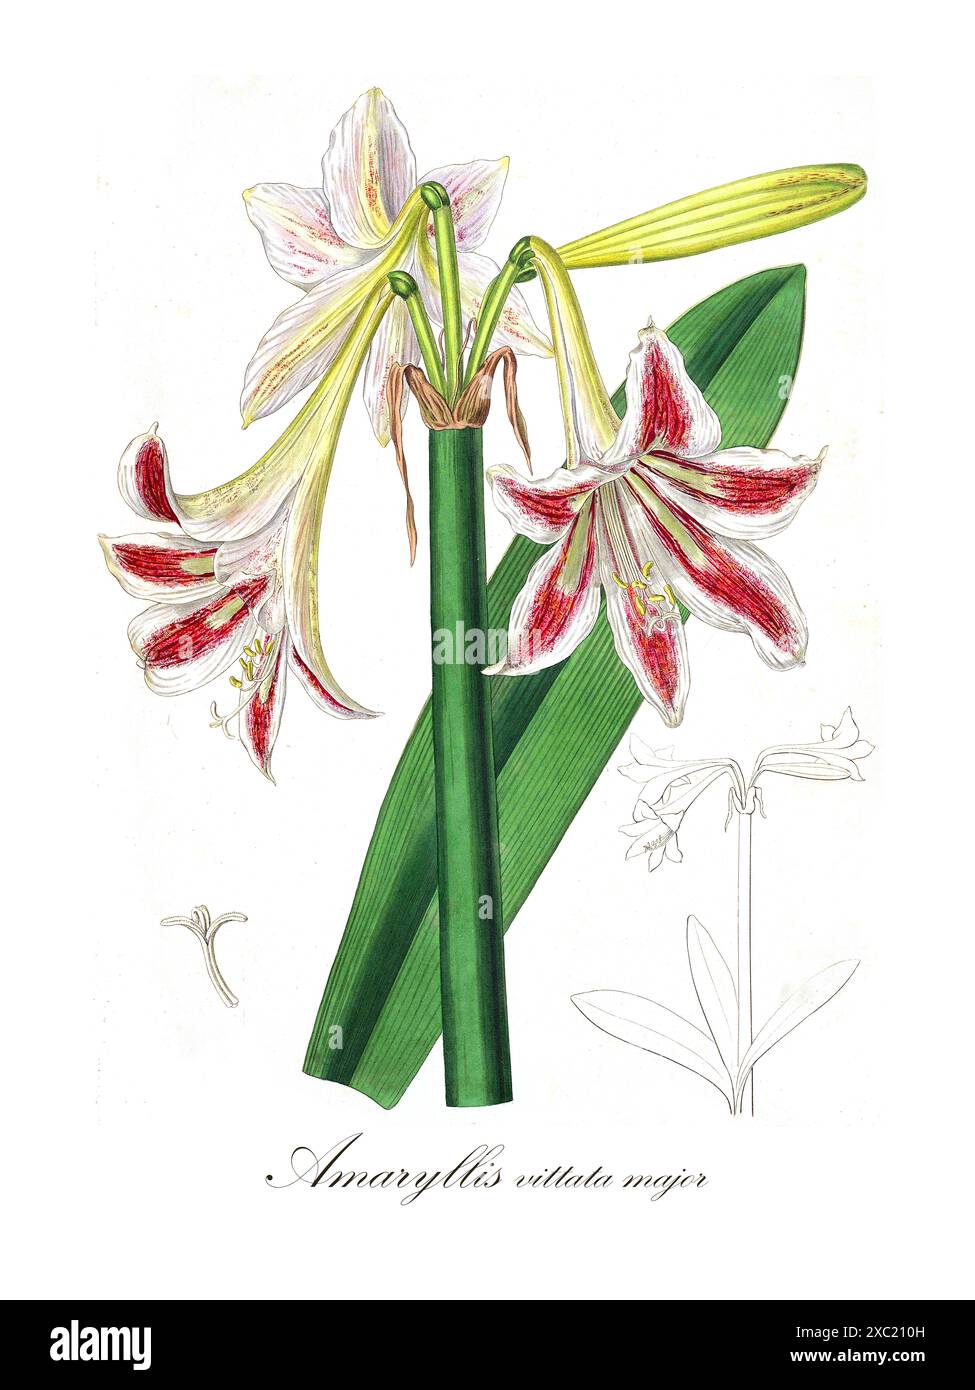 Colorata illustrazione botanica vintage di Amaryllis vittata Major della Collectanea botanica OR, figure e illustrazioni botaniche di rari e curiosità Foto Stock